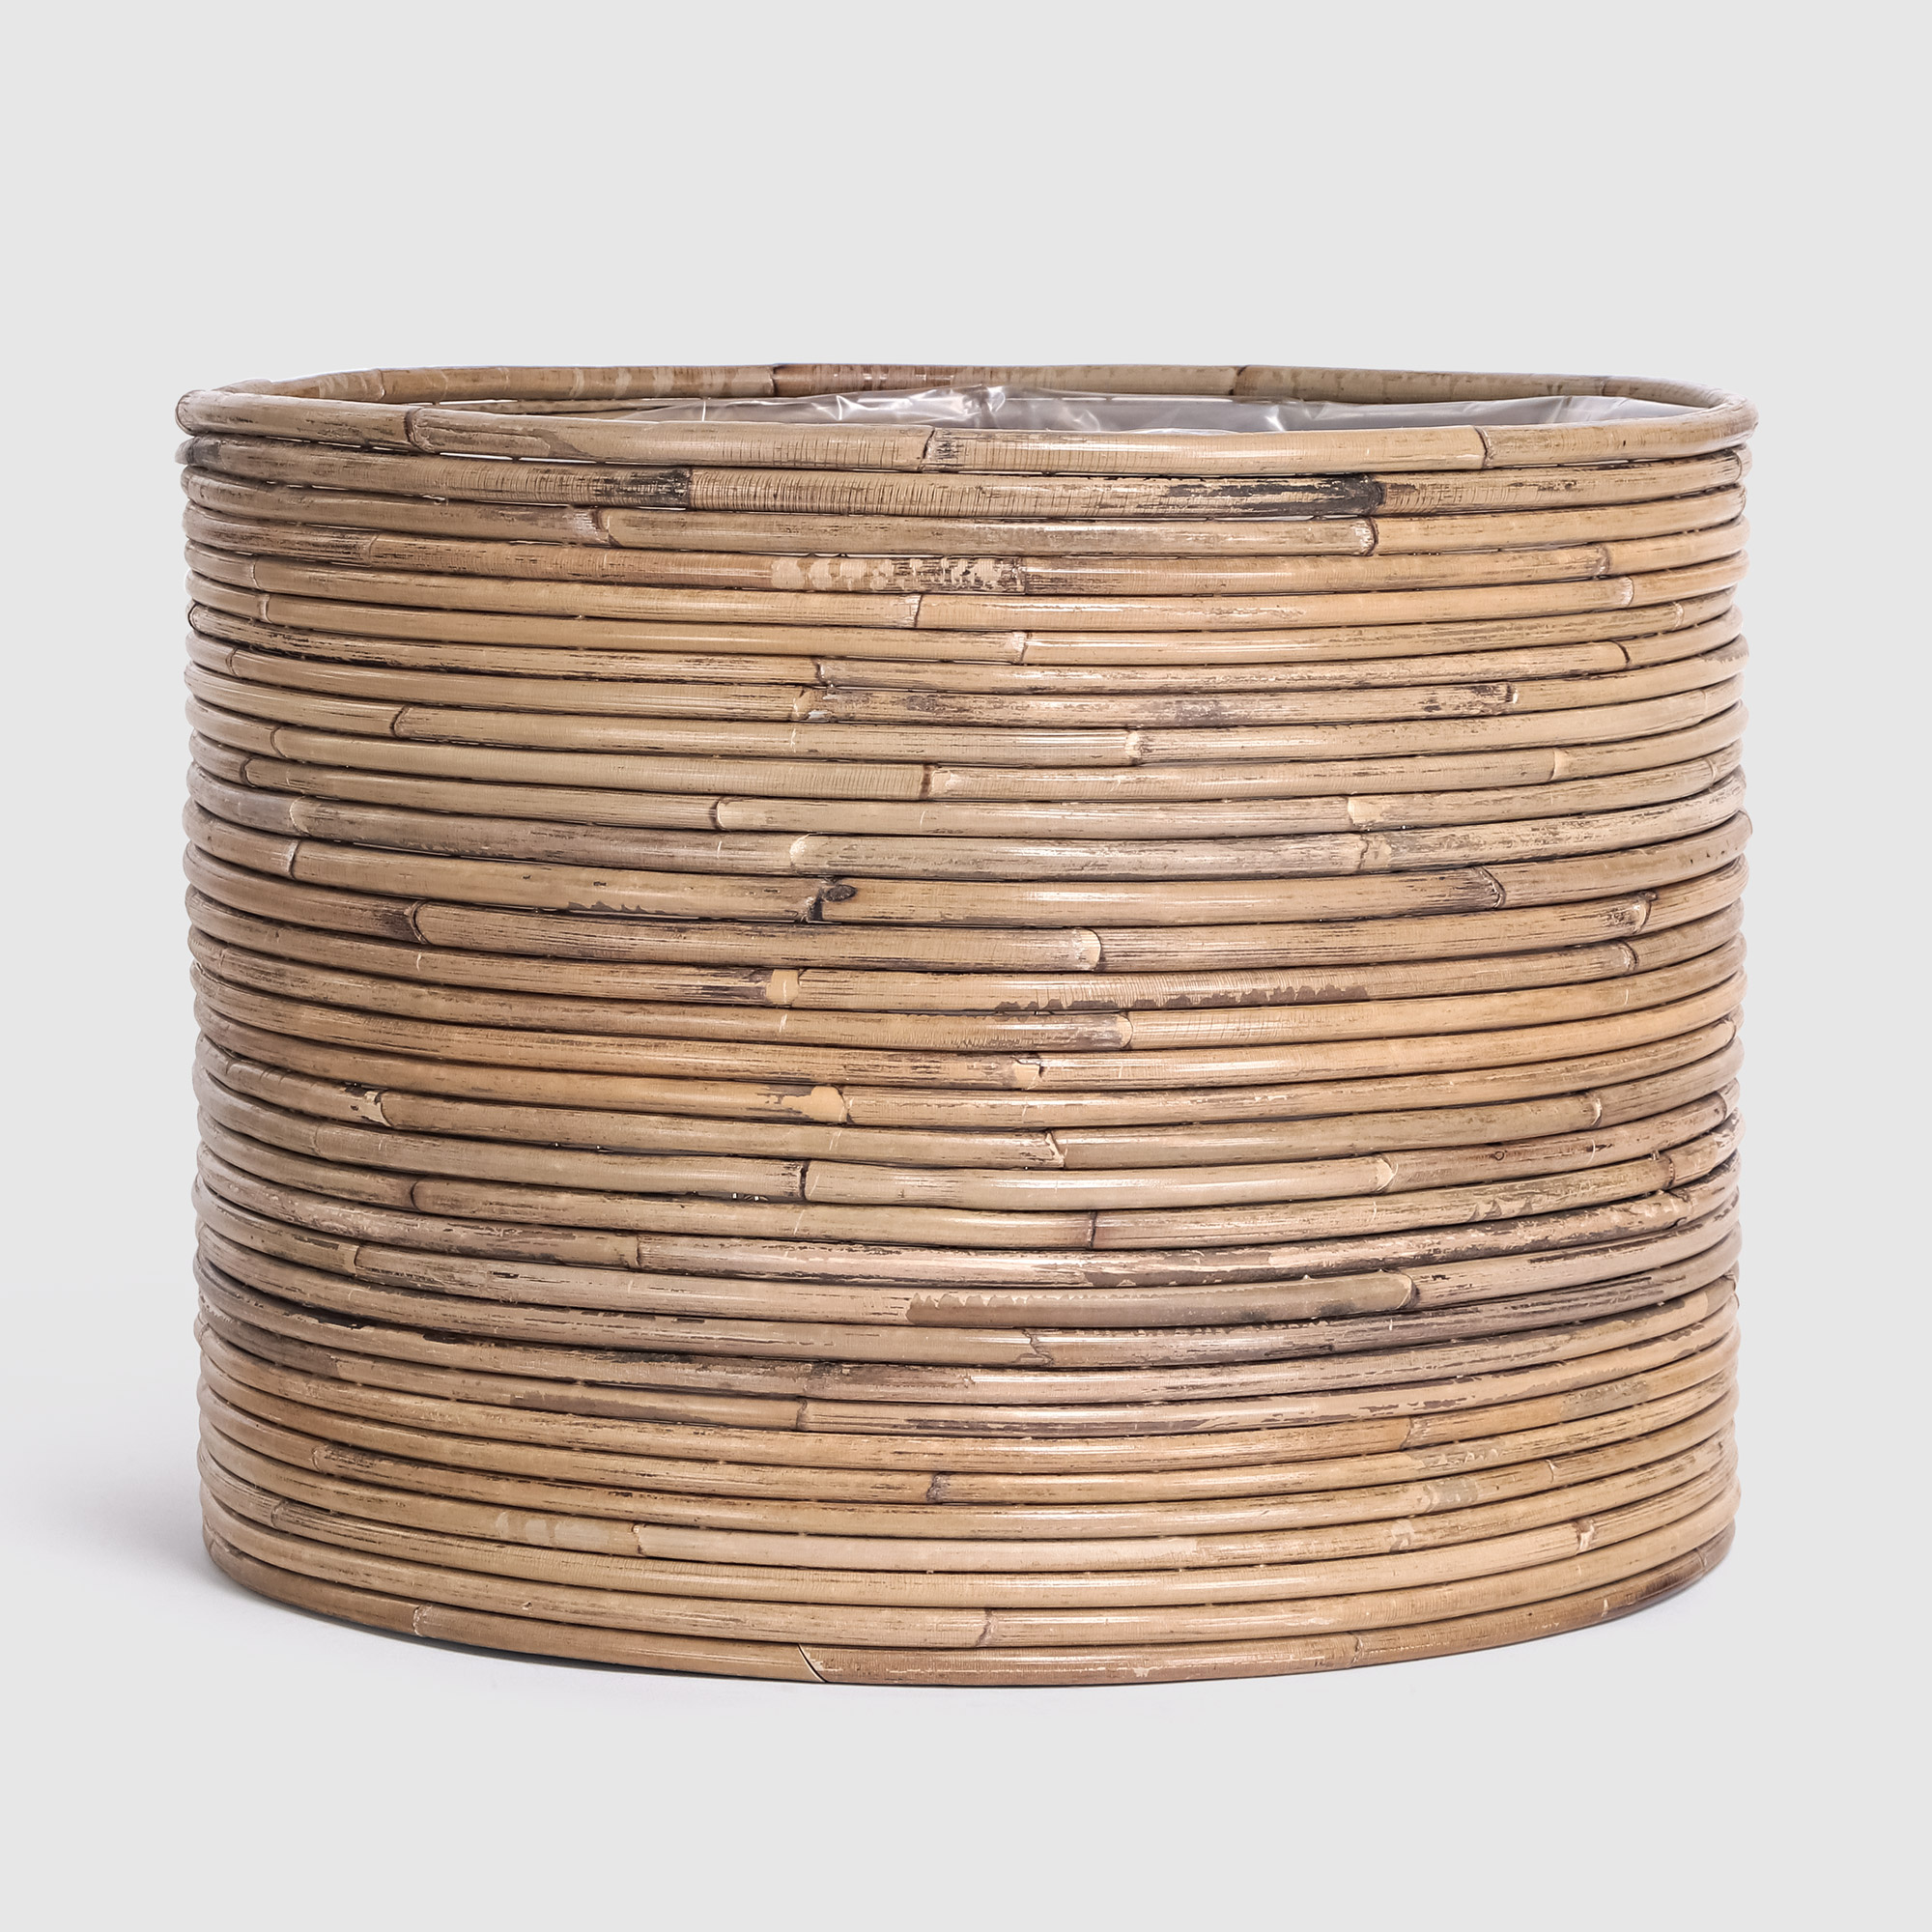 Кашпо Van der leeden Cylinder Stripe бежевое с коричневым 30х30 см